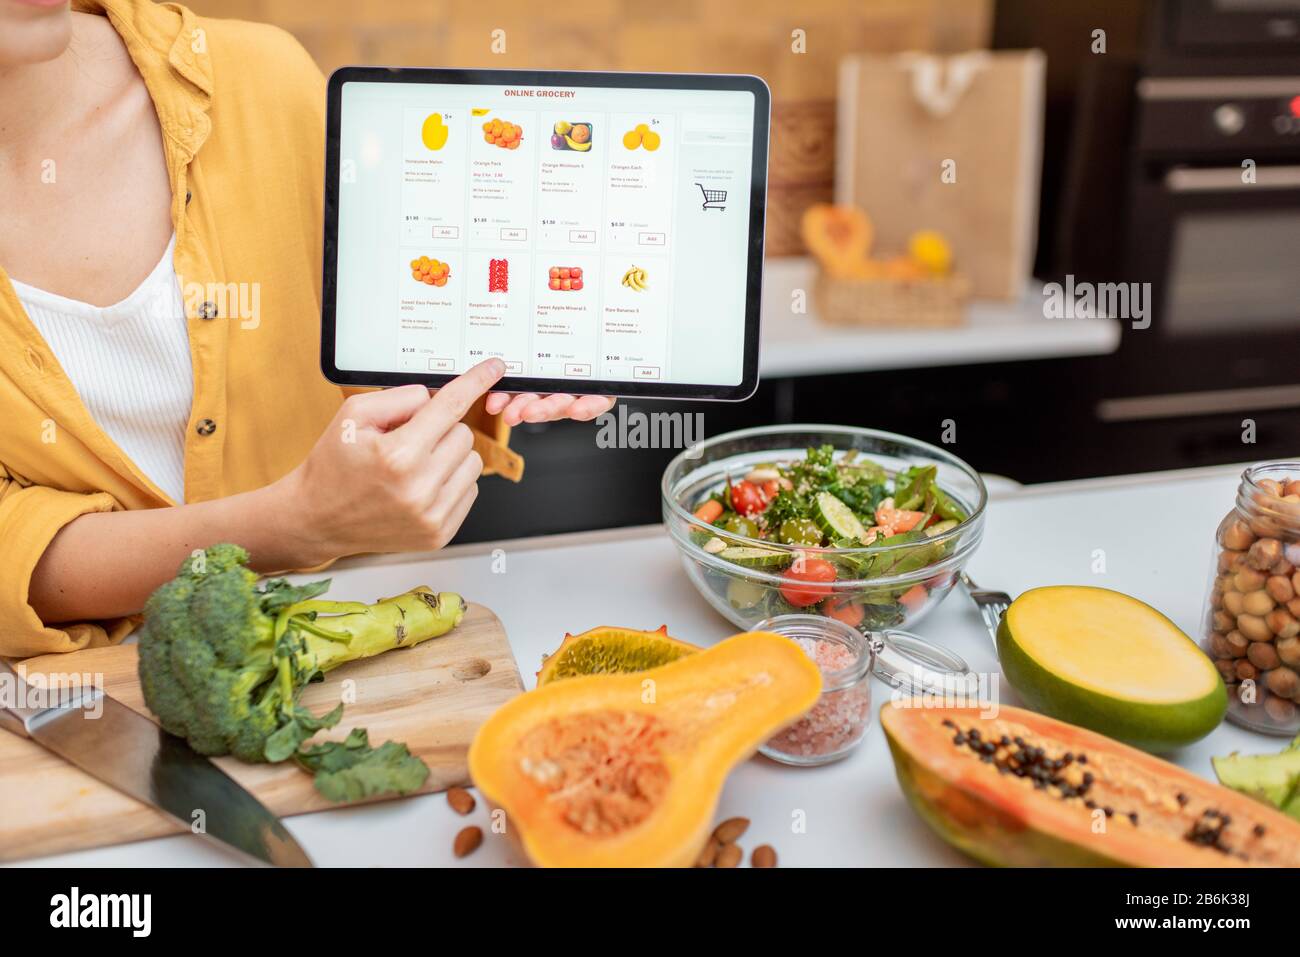 Femme tenant une tablette numérique avec le marché de shopping en ligne lancé tout en se tenant sur la cuisine avec beaucoup de nourriture fraîche sur la table Banque D'Images